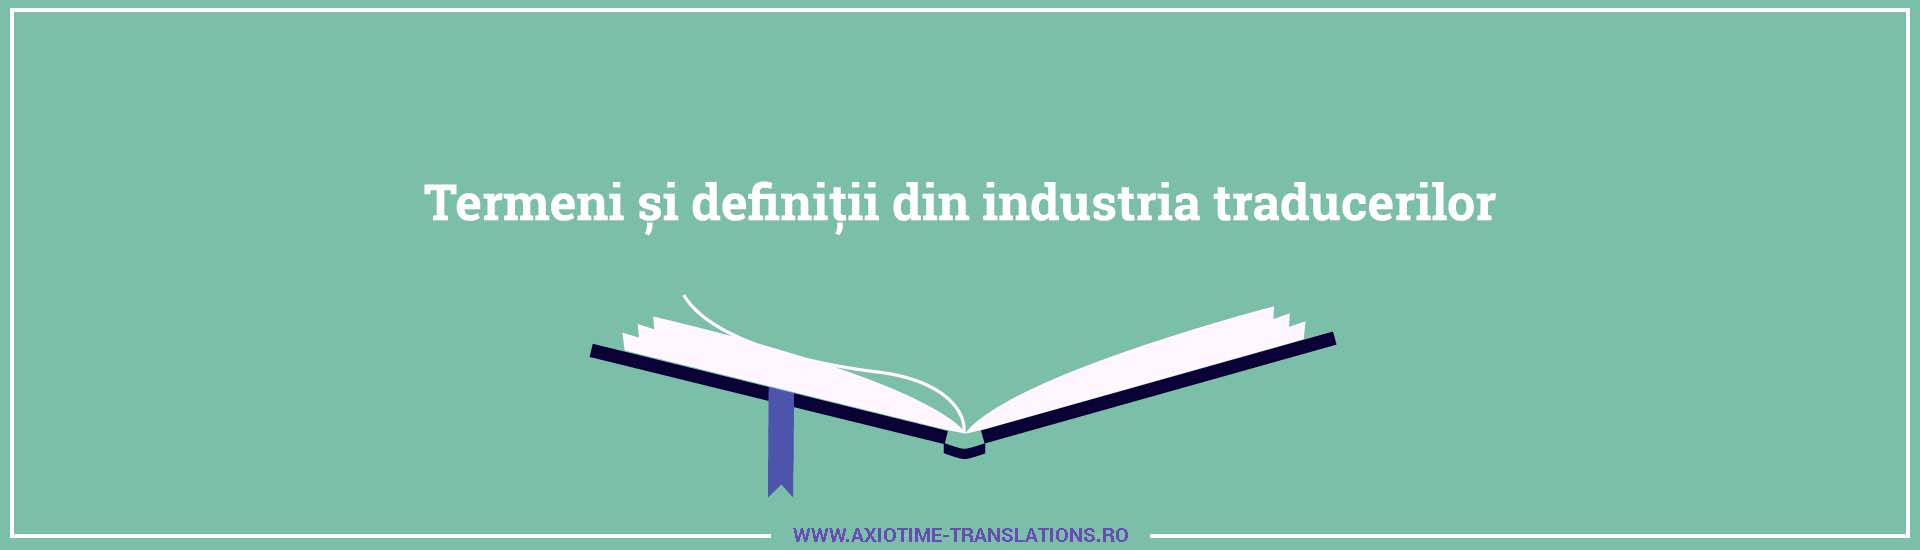 Termeni și definiții din industria traducerilor glosar de termeni despre traduceri